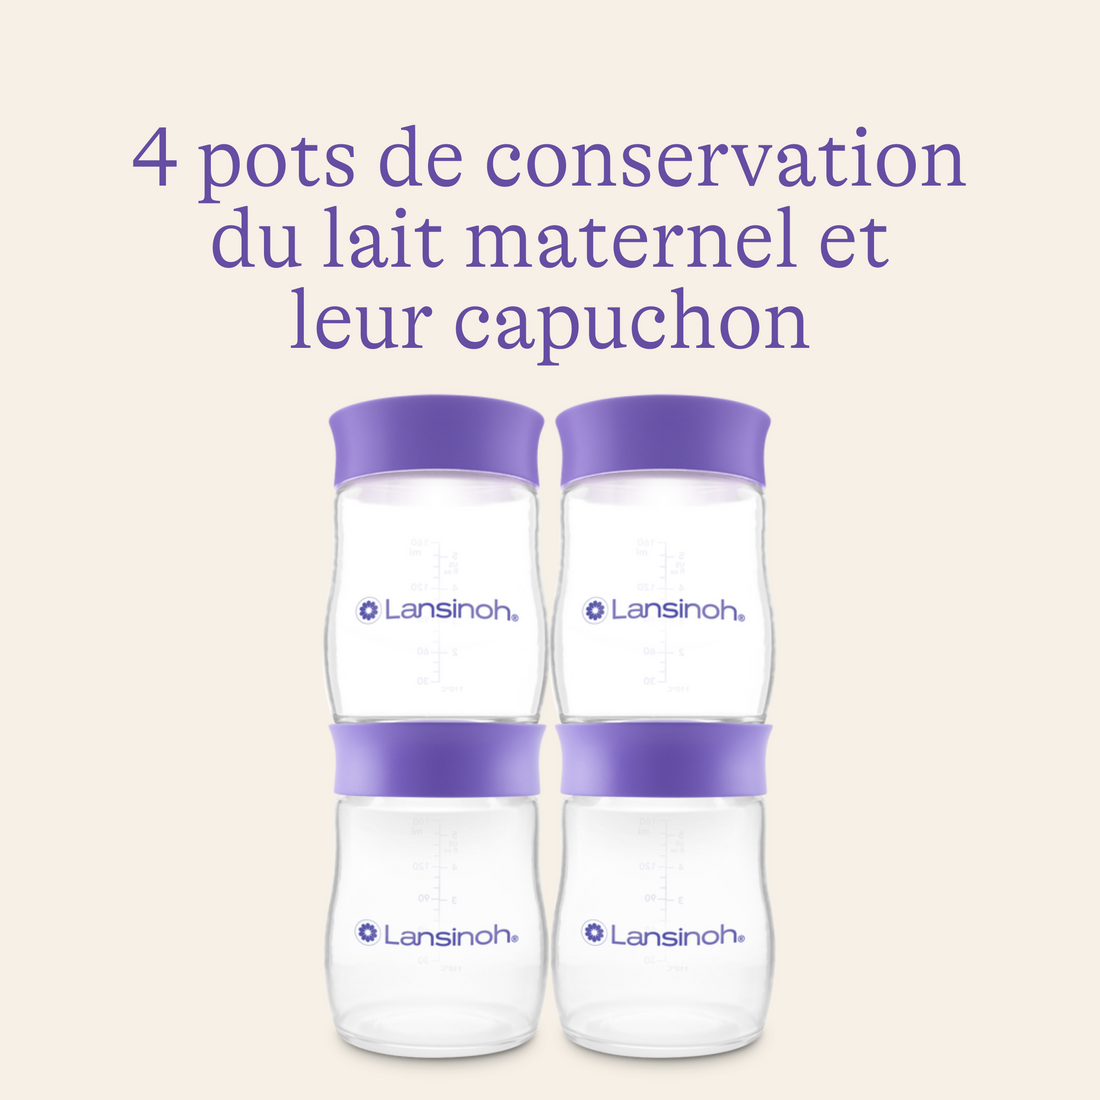 Pots de conservation du lait maternel, Sans fuites